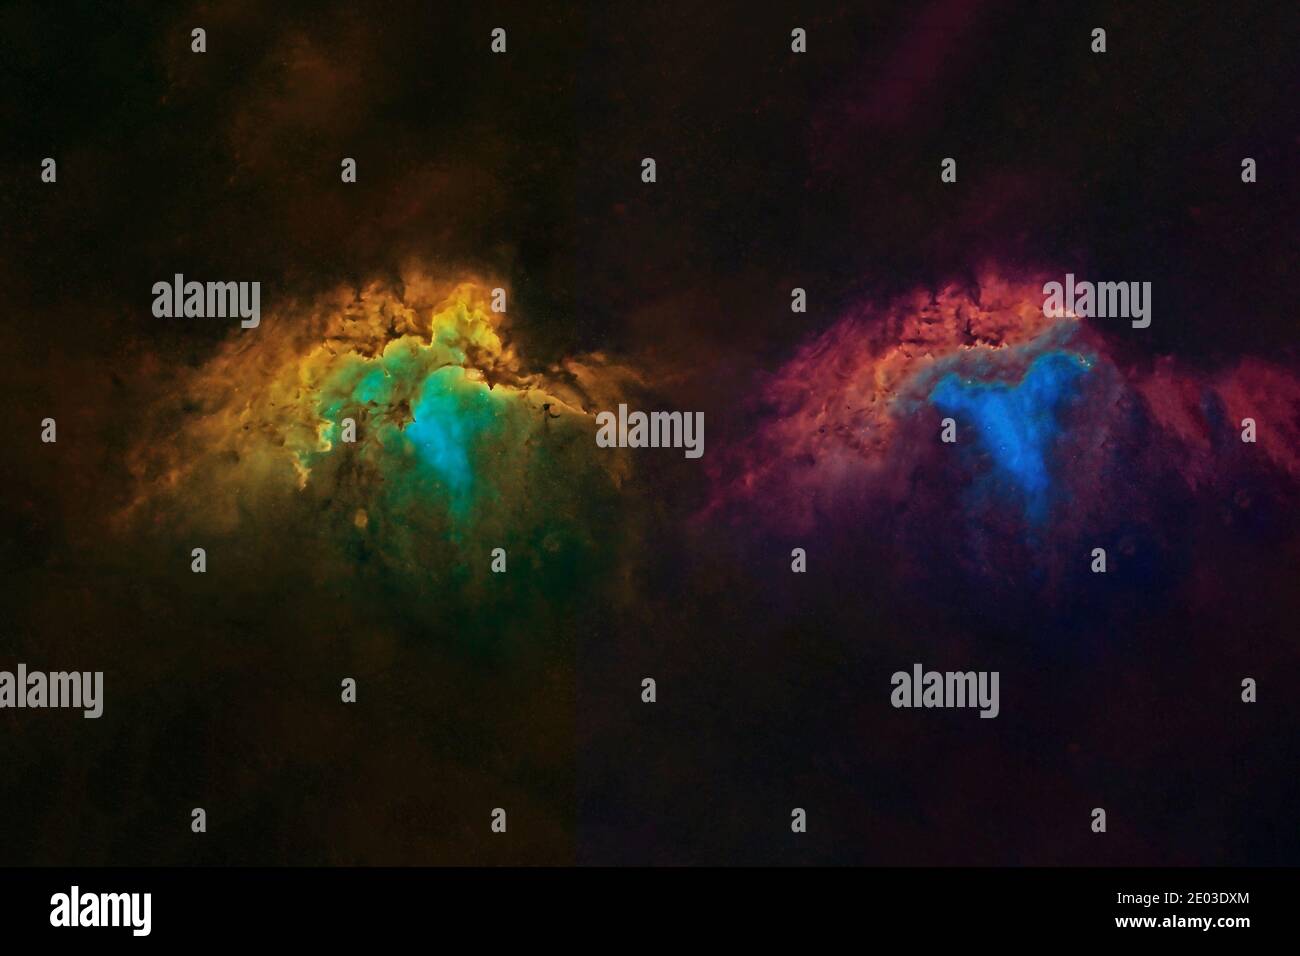 Galassia insolita immagini e fotografie stock ad alta risoluzione - Alamy